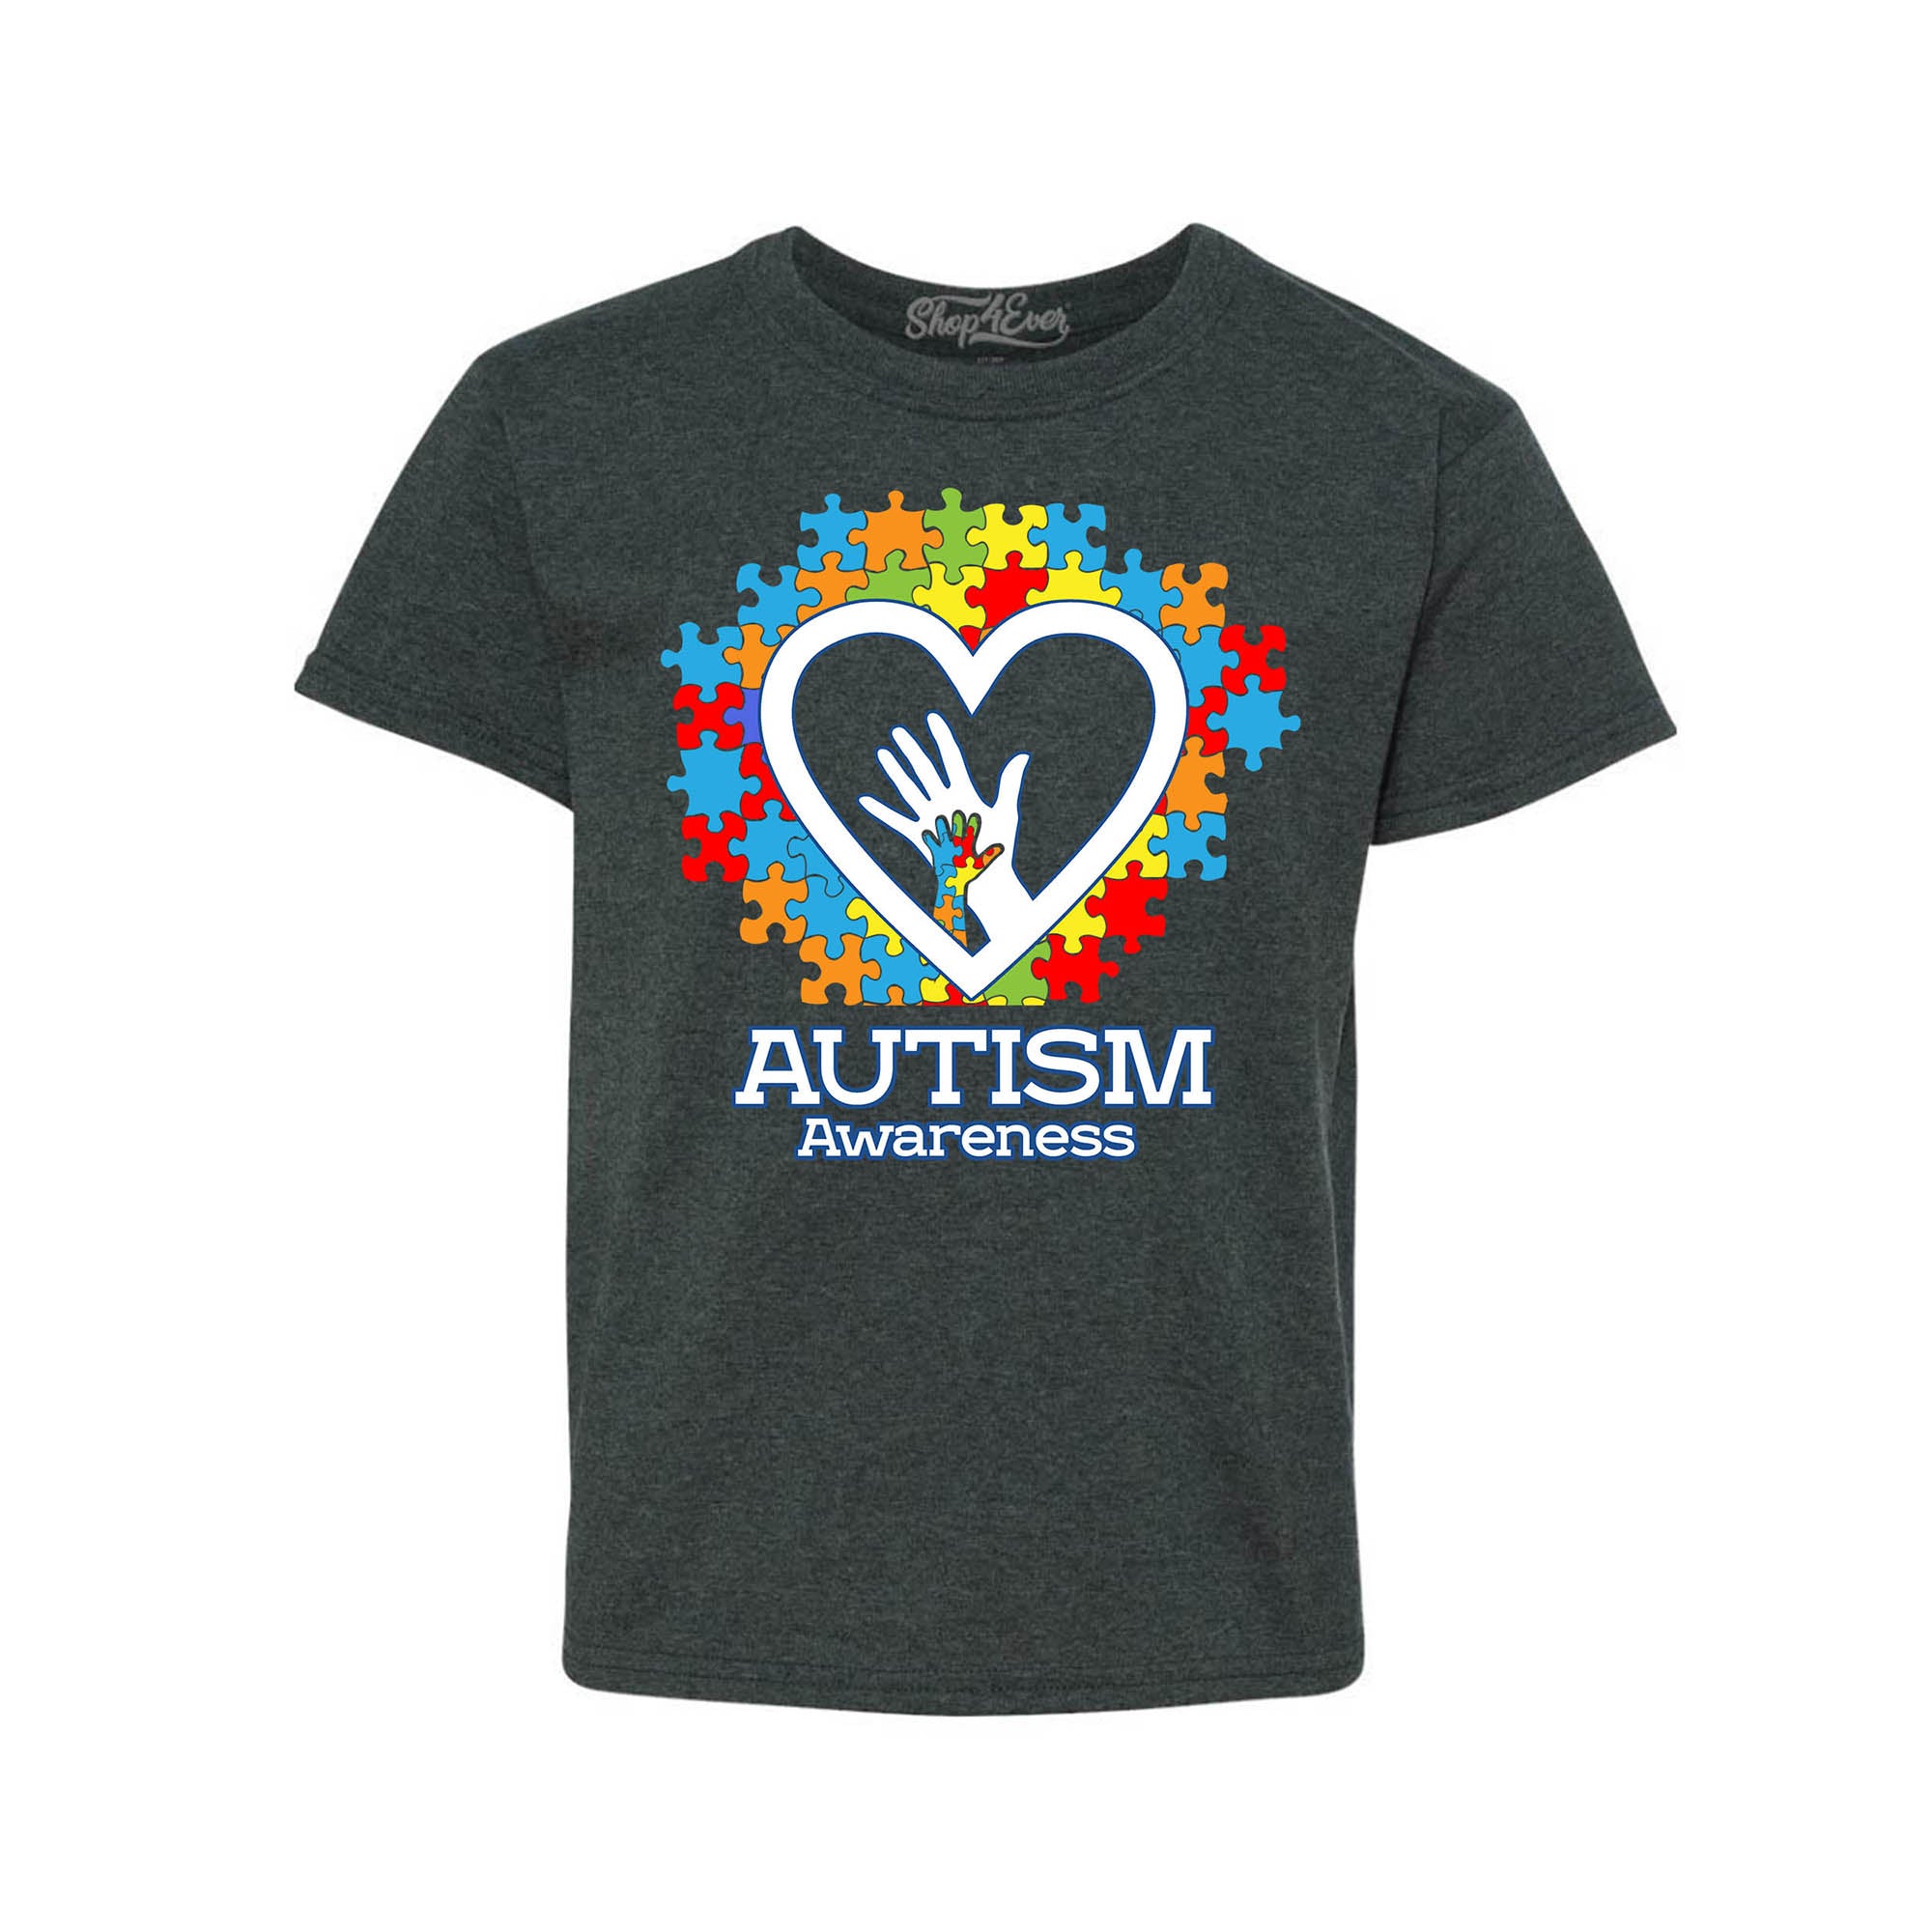 Autism Awareness Hands in Heart Child's T-Shirt Kids Tee